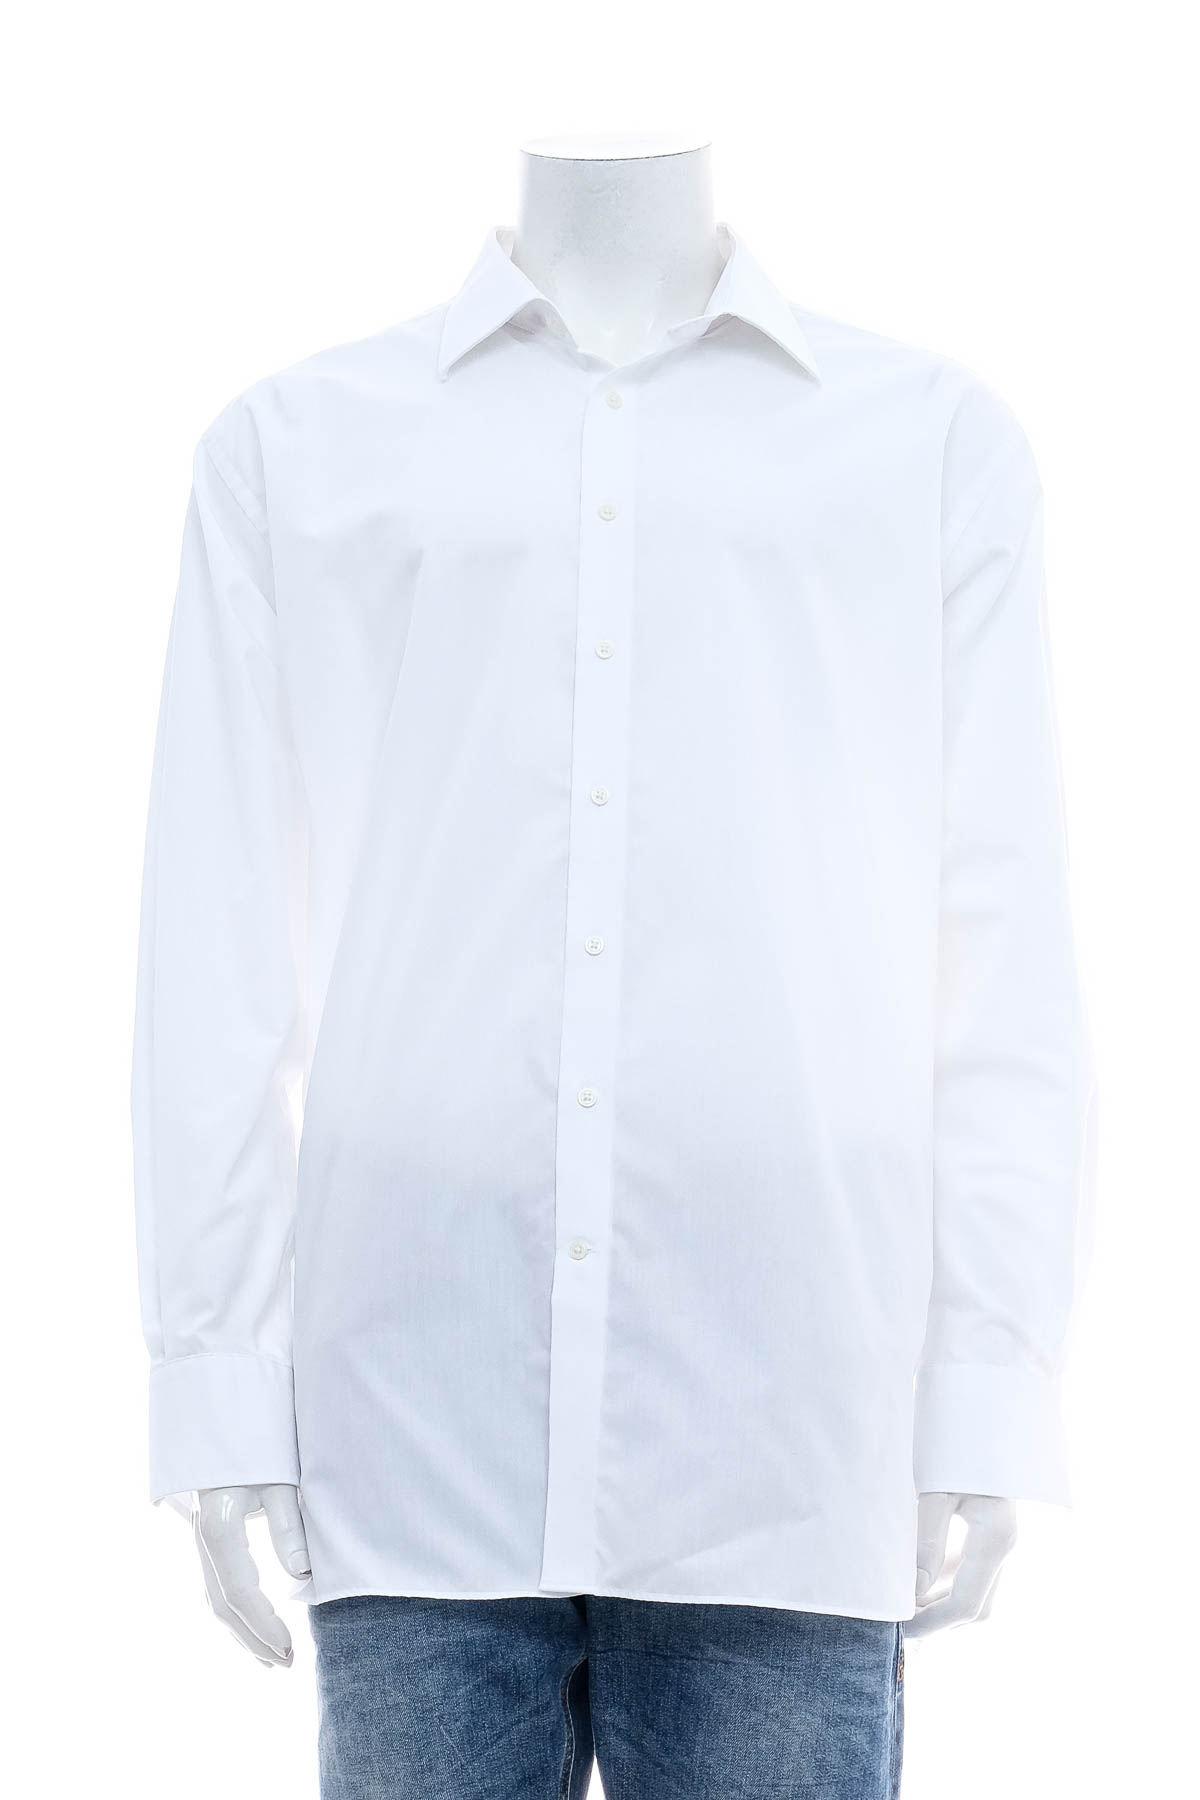 Ανδρικό πουκάμισο - VINCENZO BORETTI - 0